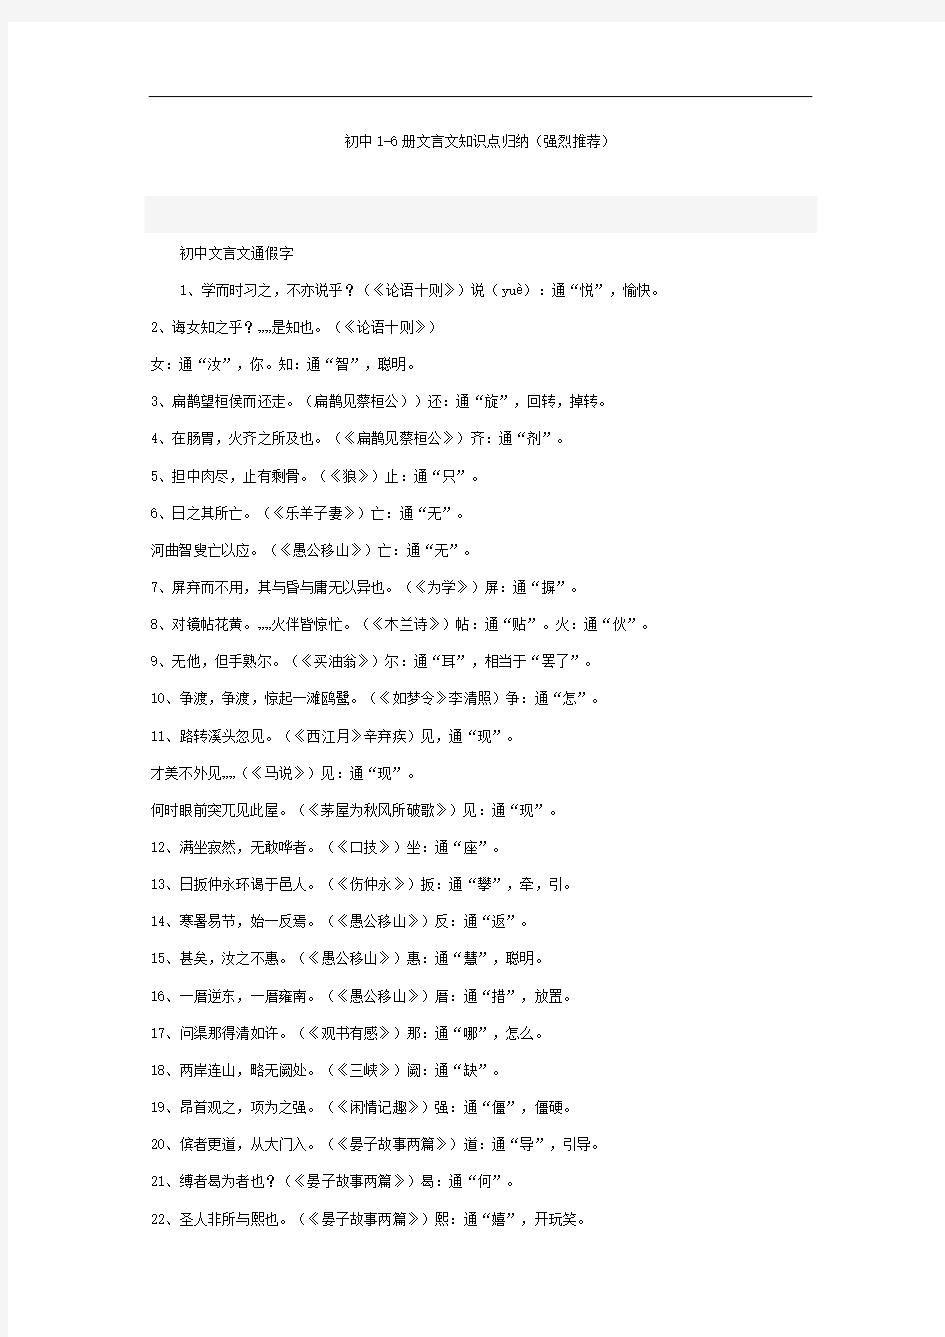 最新整理初中语文1-6册文言文知识点大全